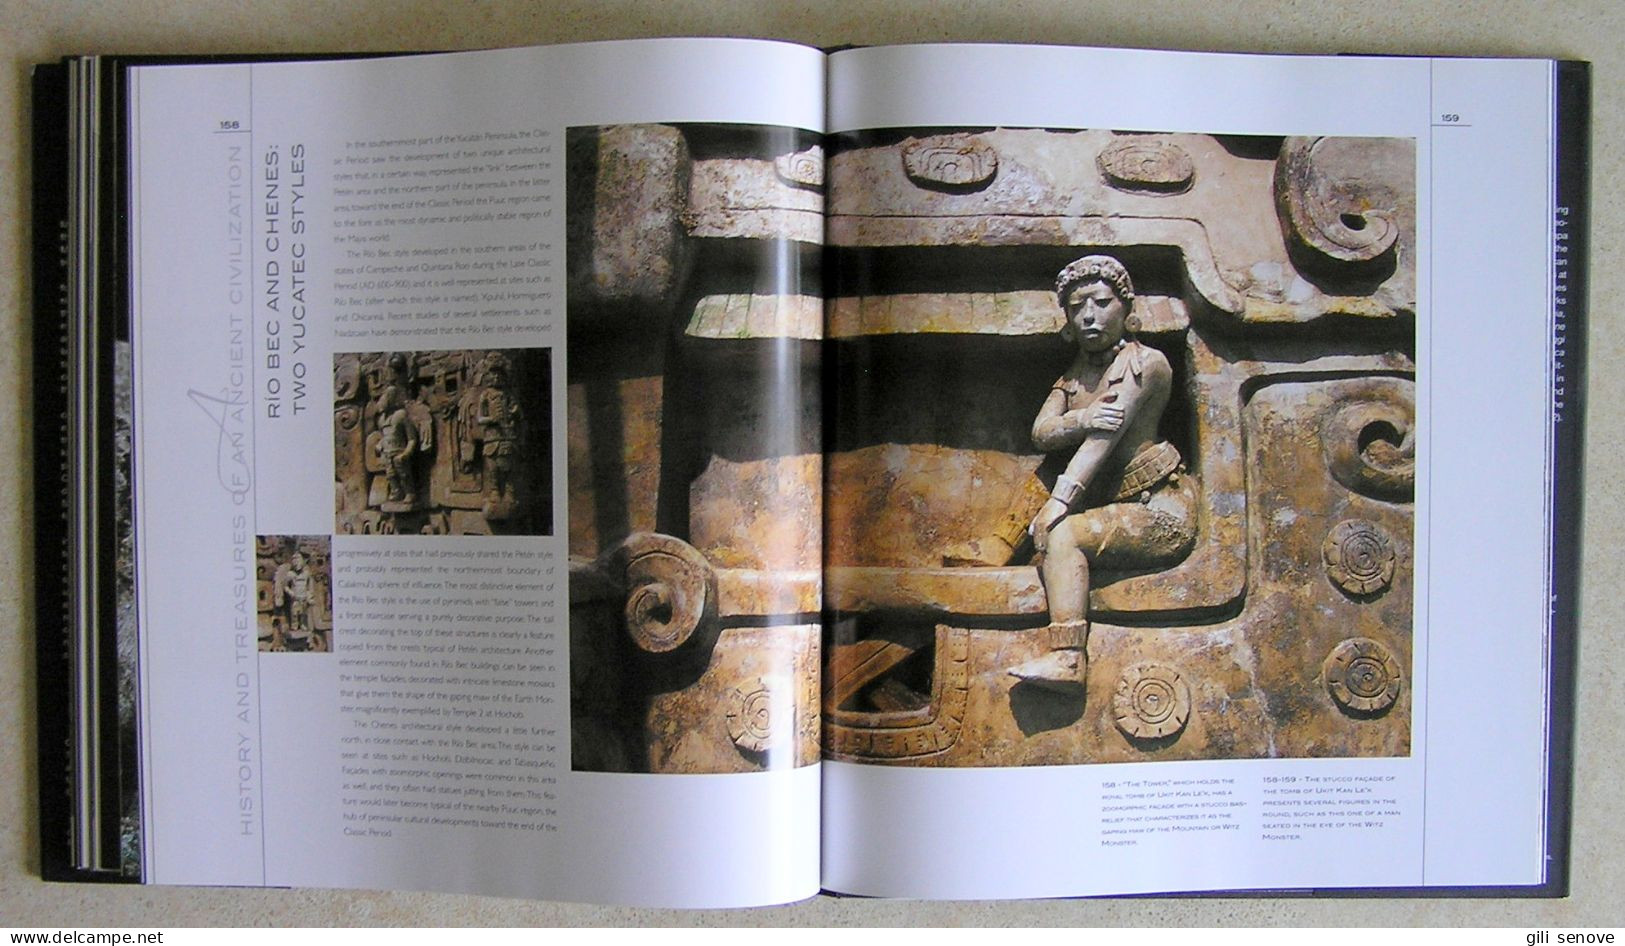 The Maya: History and Treasures of an Ancient Civilization 2006